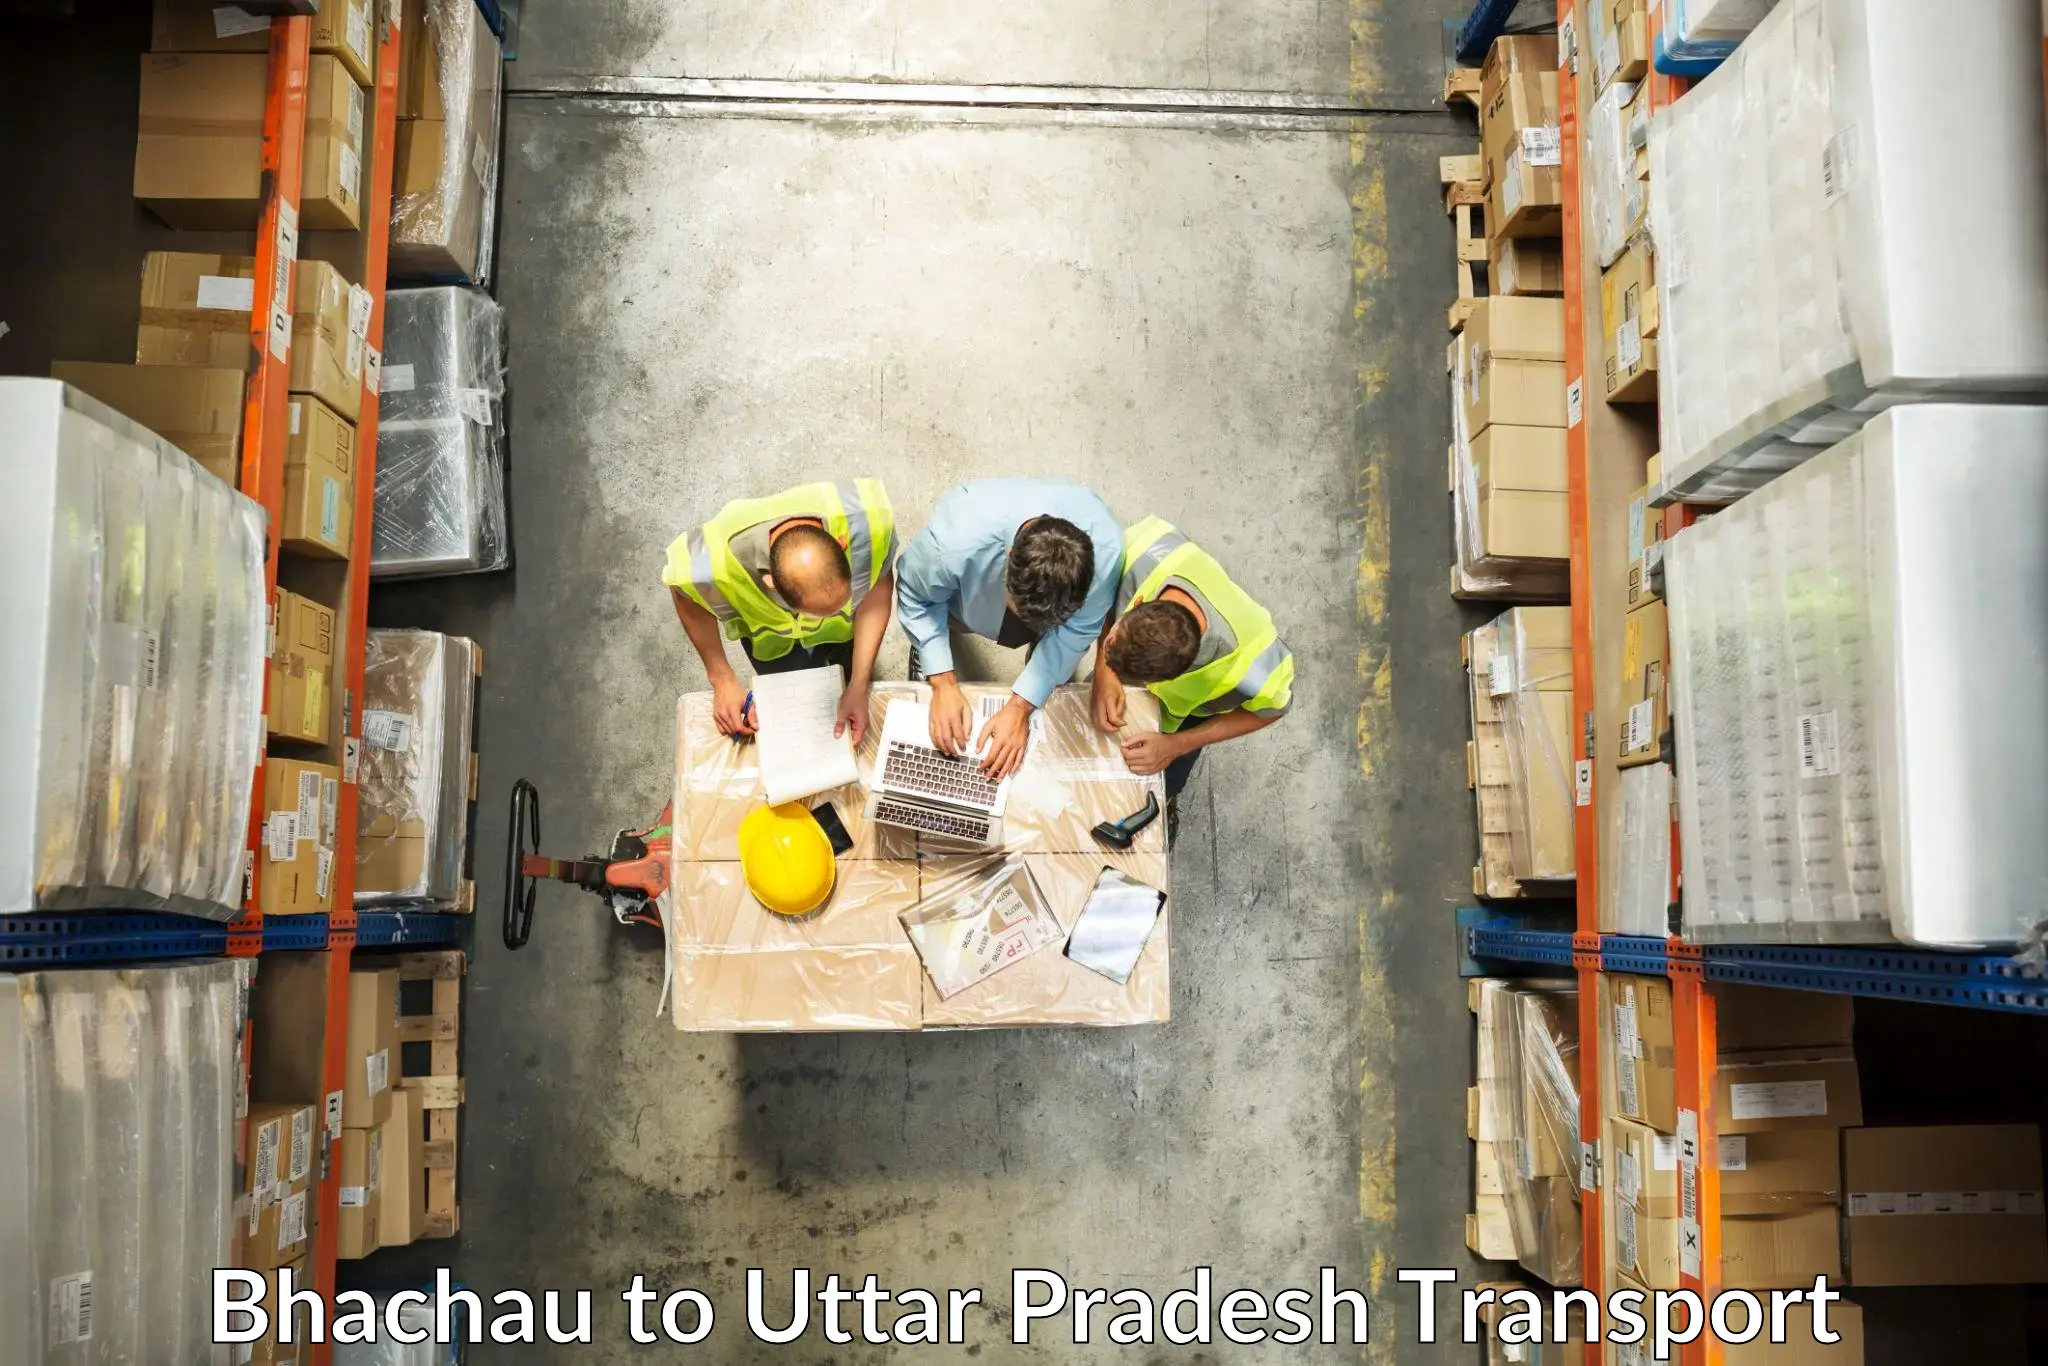 Furniture transport service in Bhachau to Deoria